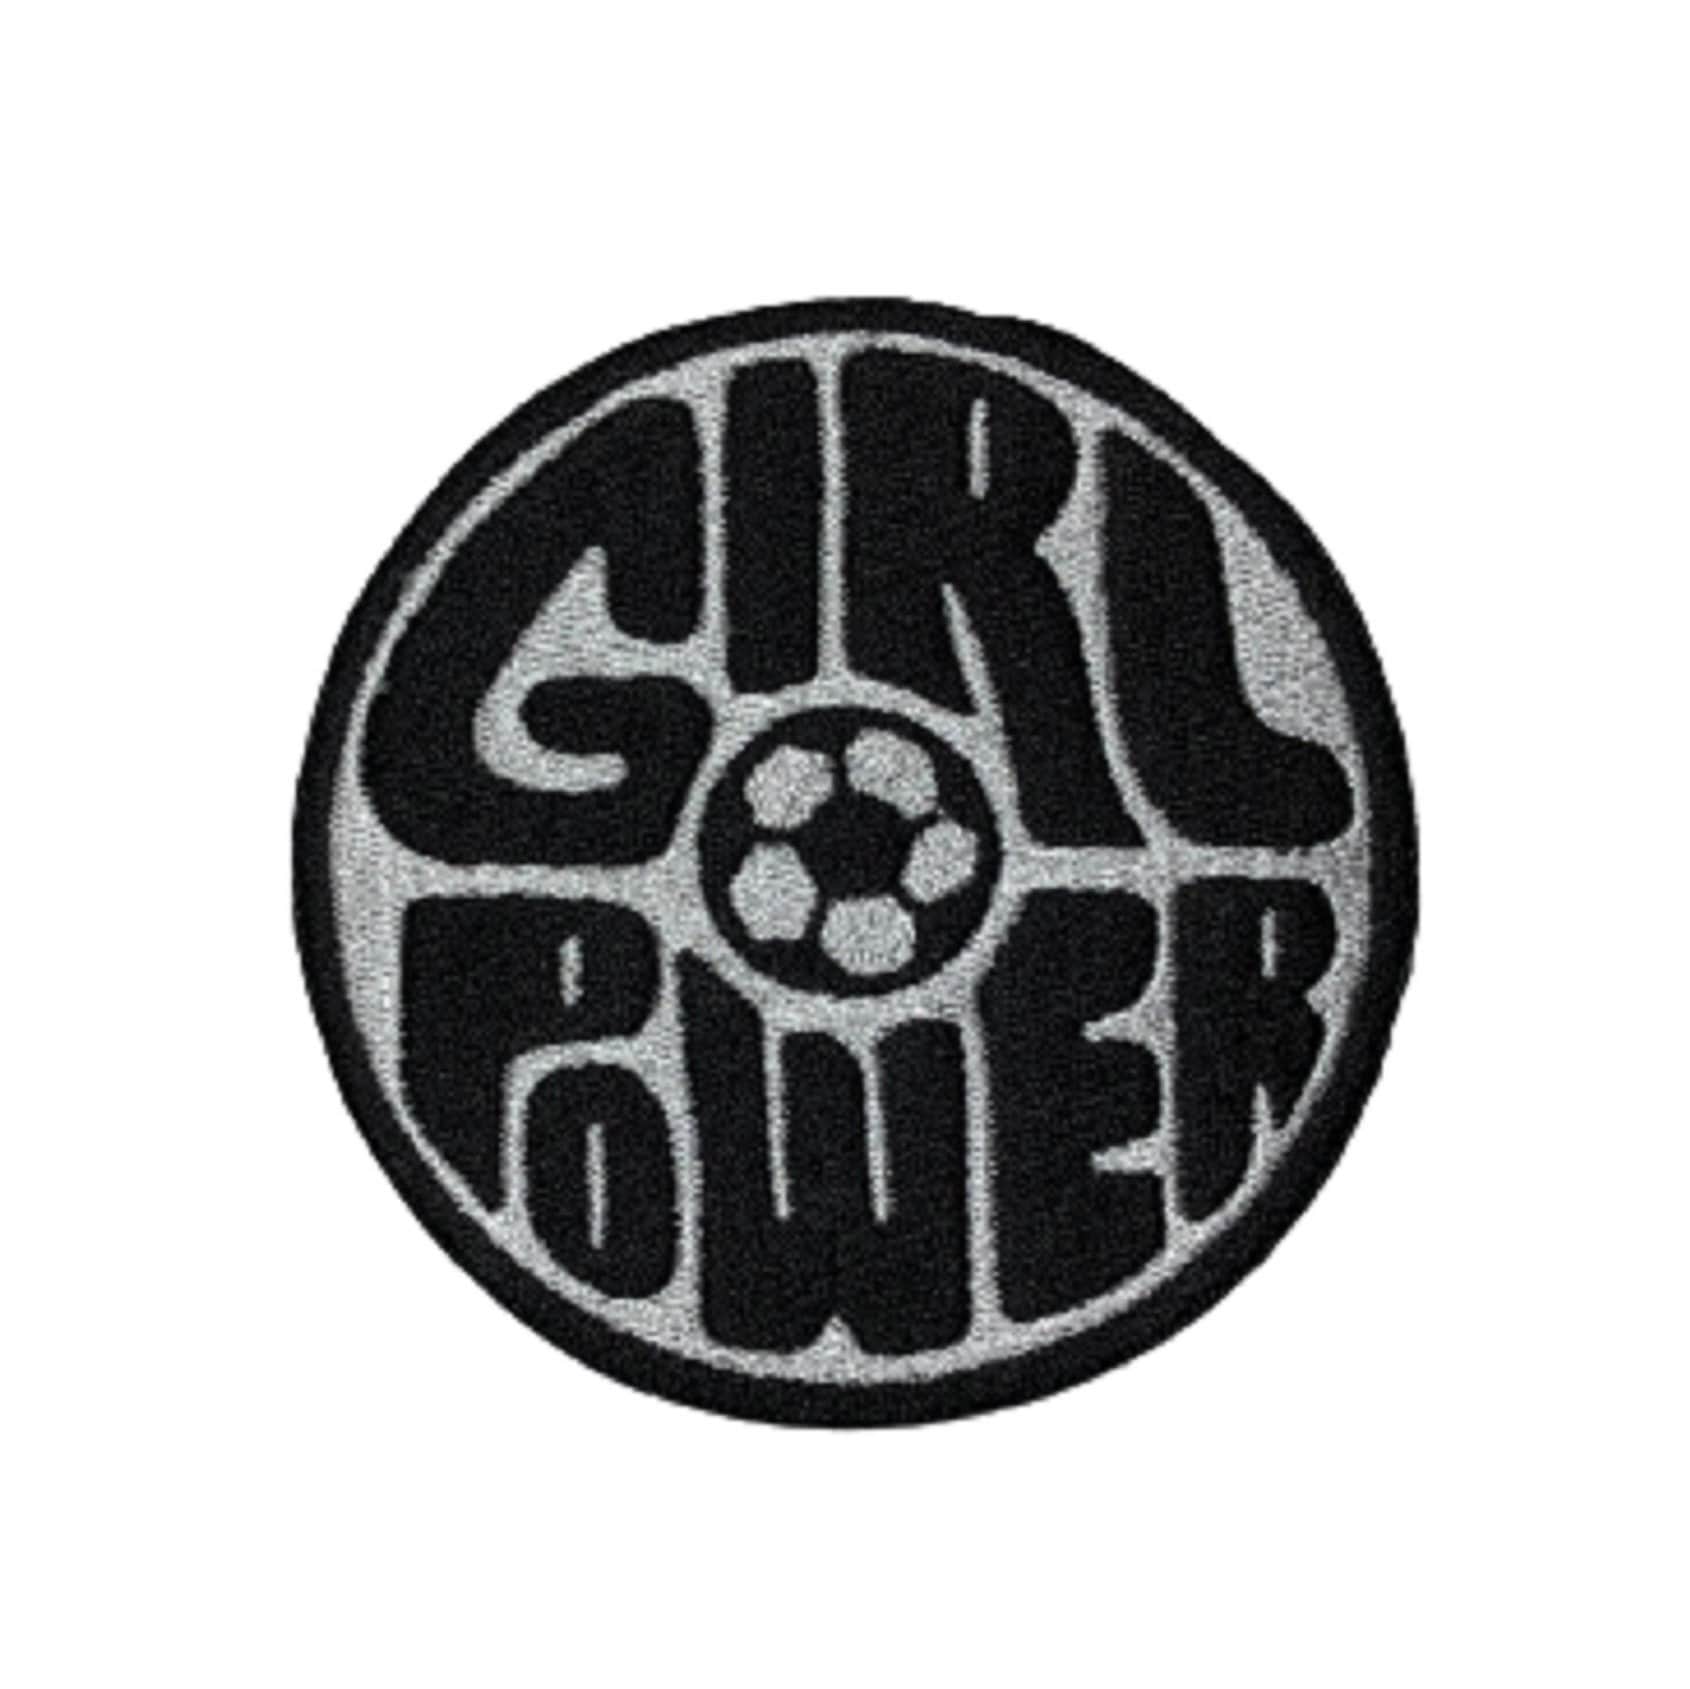 Großer Aufnäher Fußball Geschenke, Für Jacken, Patch Zum Aufbügeln, Girl Power Geschenke Fußballspieler, Mädchen Geschenk von SportyGirlAcc